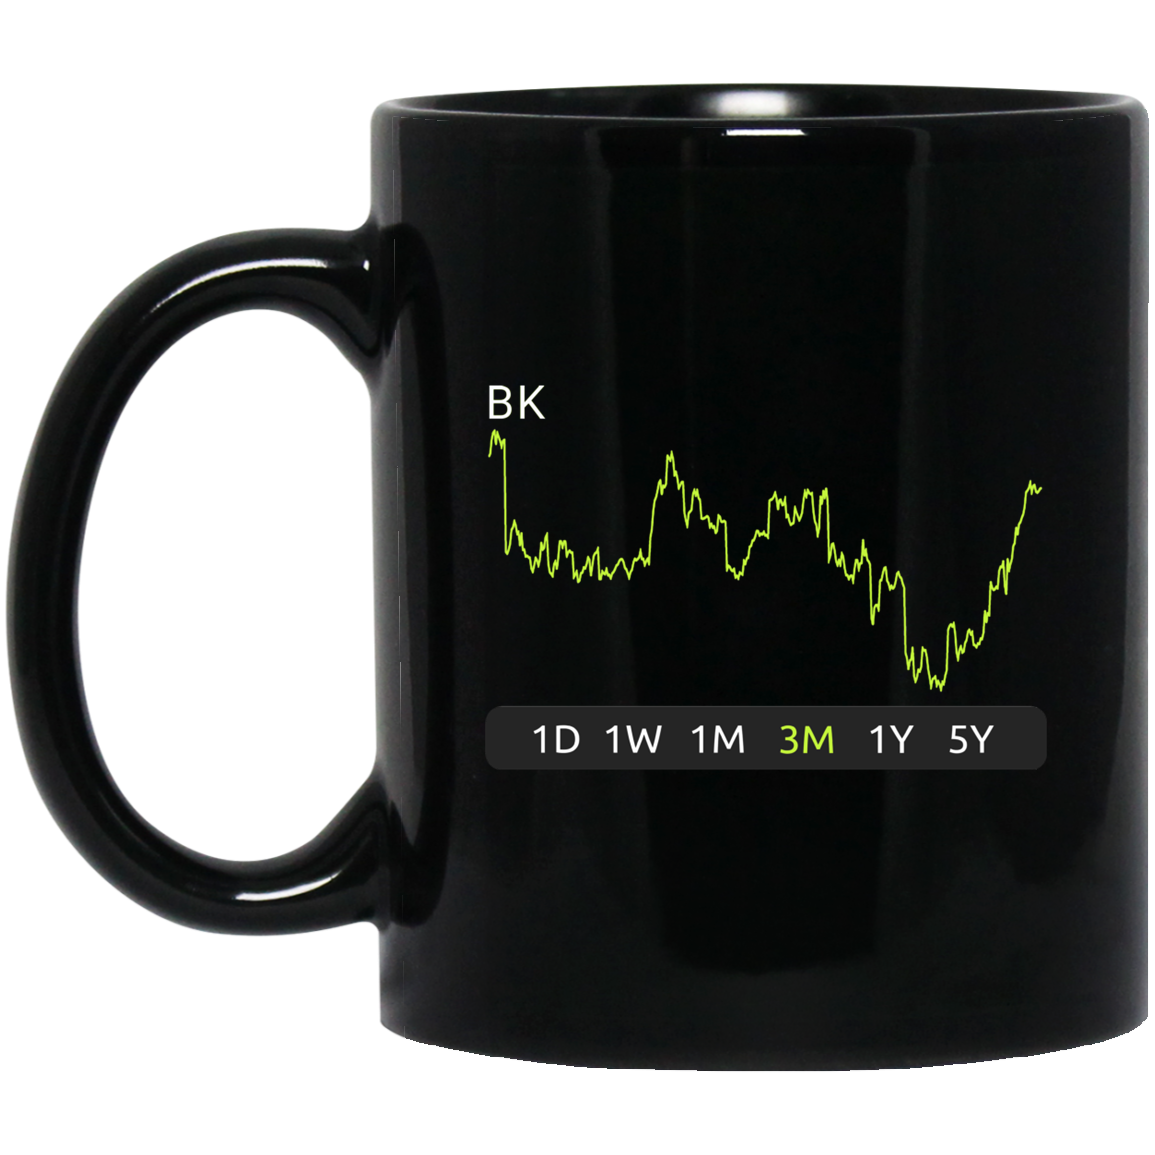 BK Stock 3m Mug